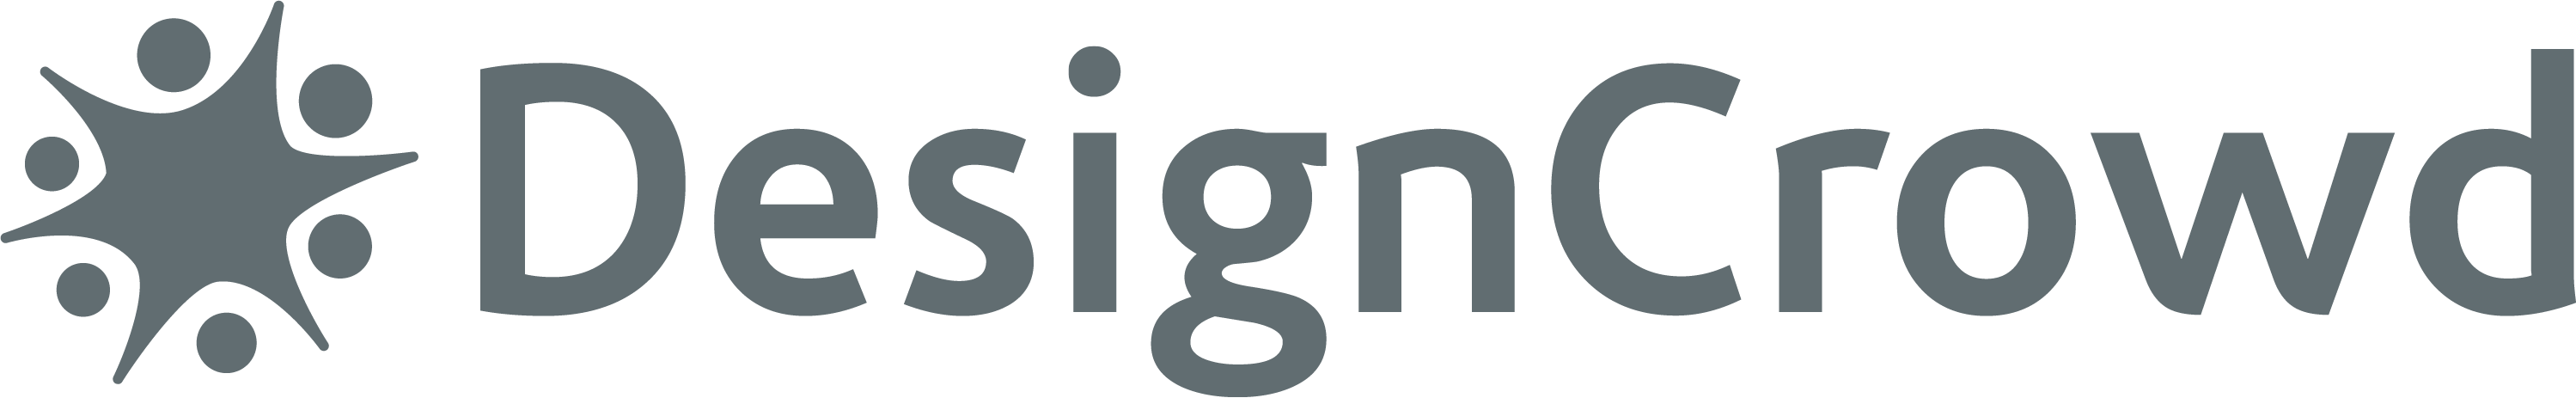 DesignCrowd Logo png